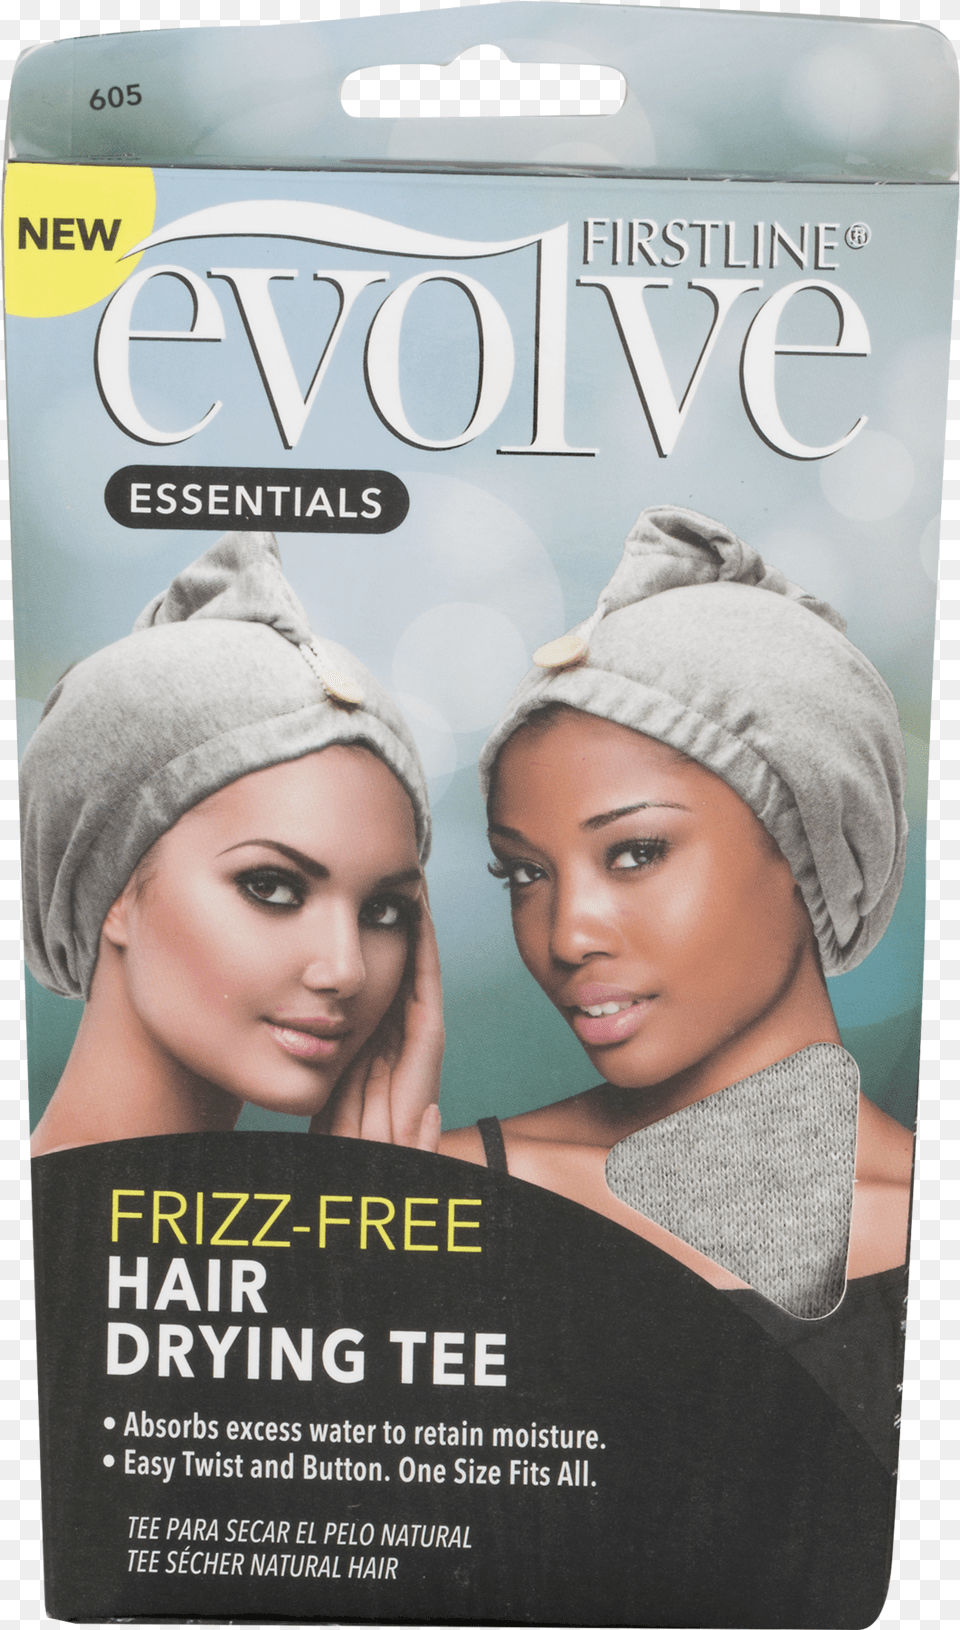 Evolve Frizz Publication, Cap, Clothing, Hat Free Transparent Png